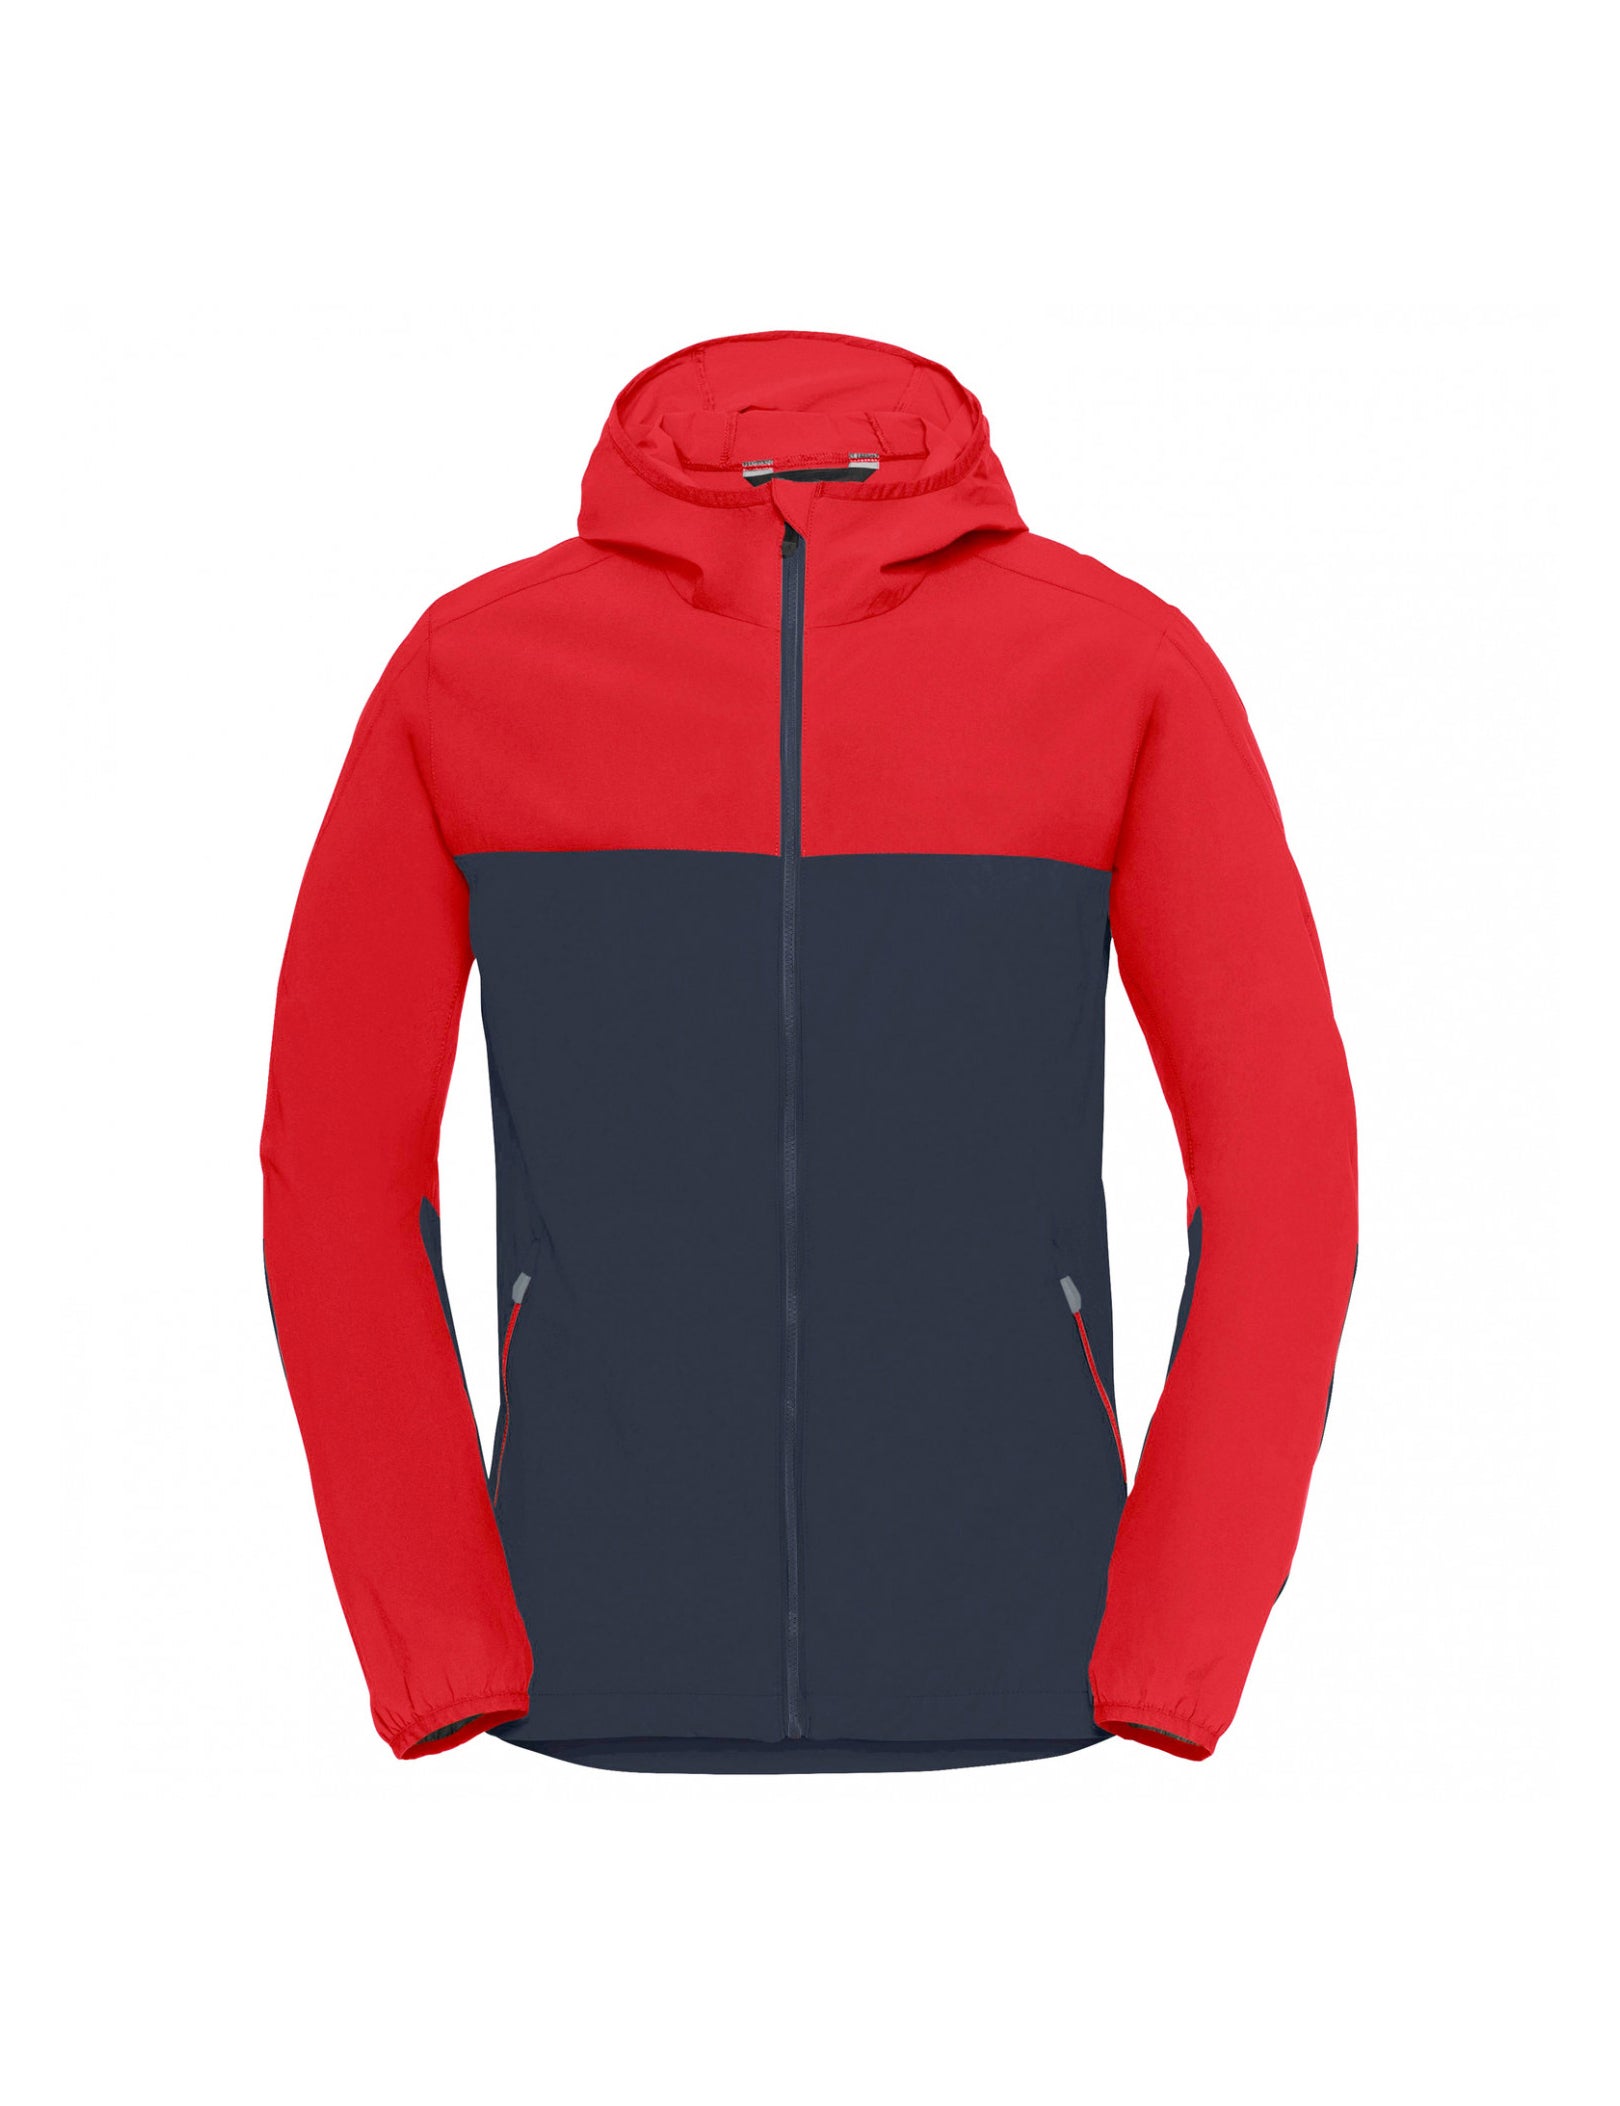 Waterproof Reliable Jacket Supplier – Hiking venedor-regal-blue-outdoor Outdoor Wear